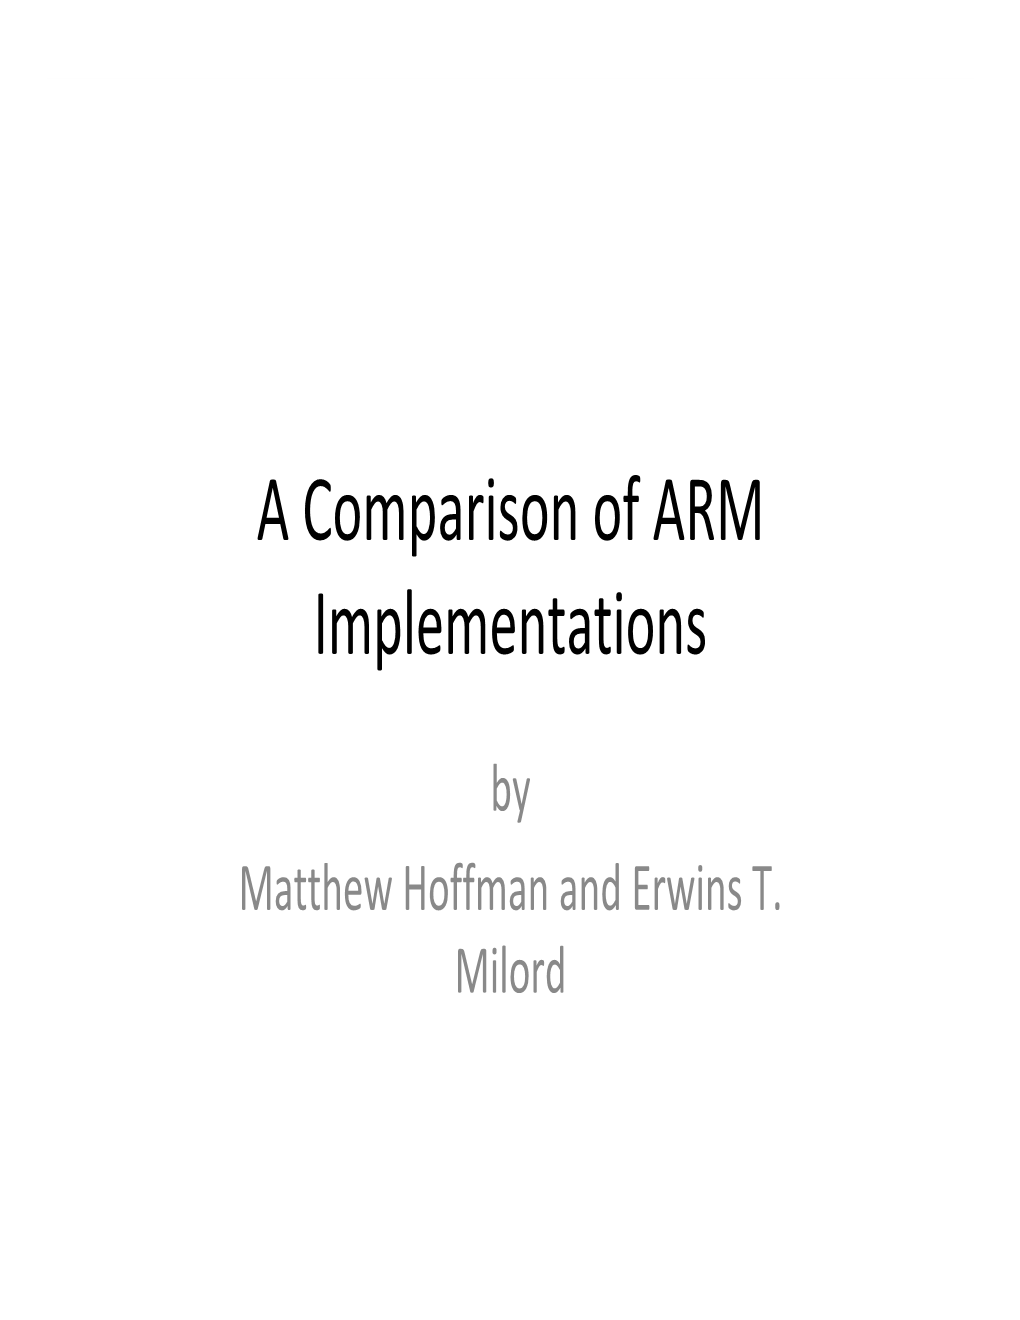 A Comparison of ARM Implementations